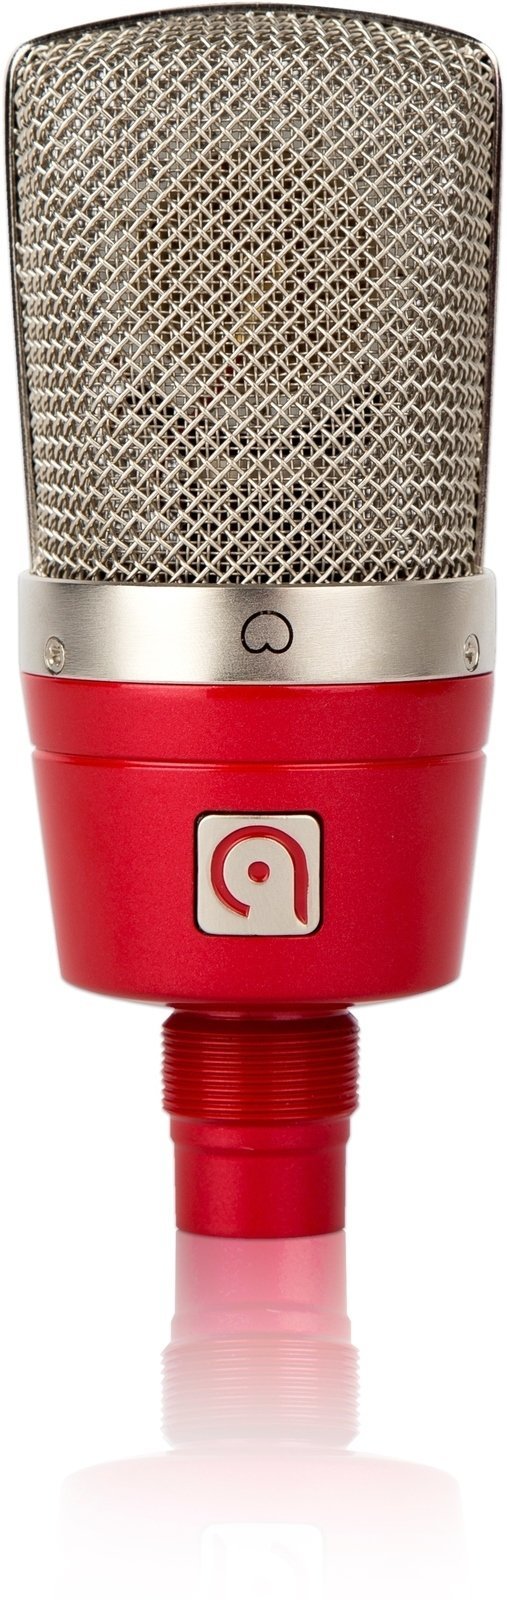 Mikrofon pojemnosciowy studyjny Audio Probe LISA 1 Red